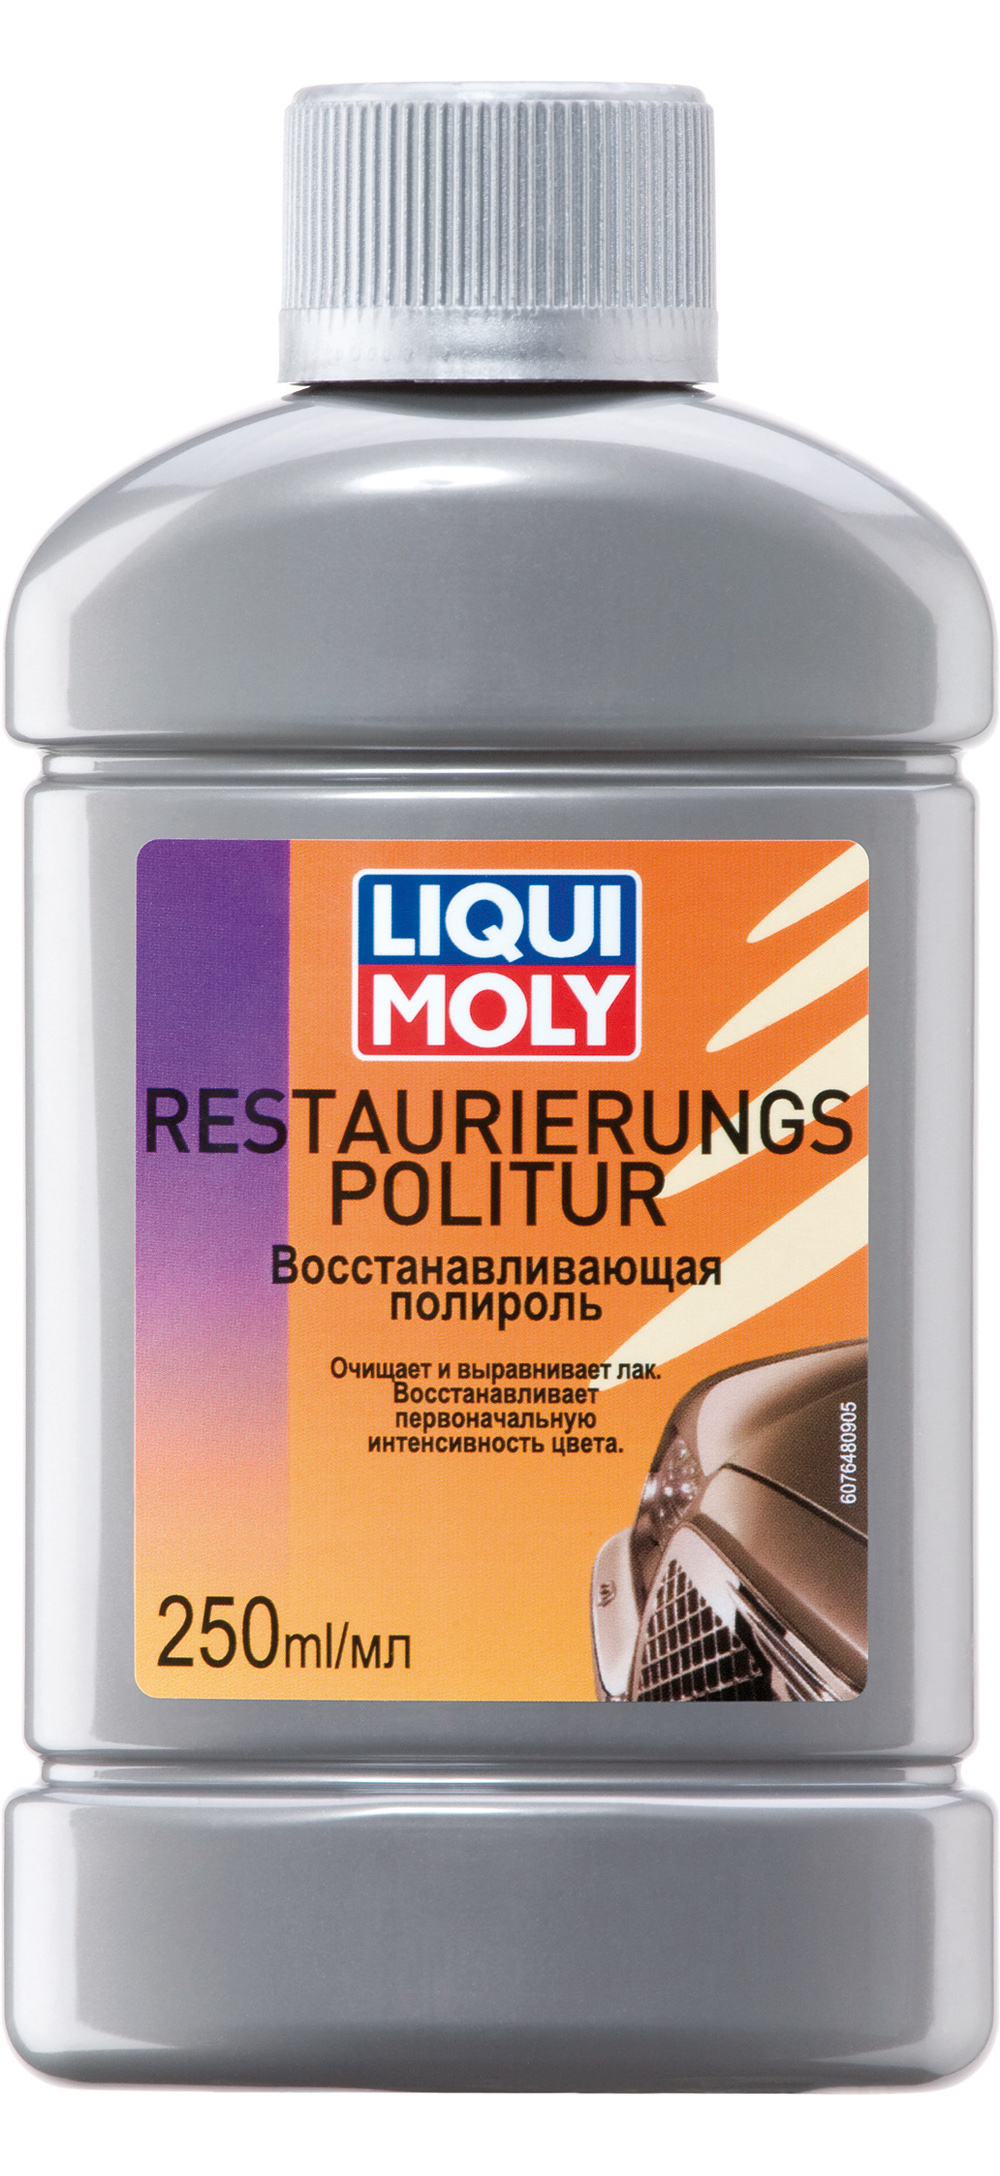 Восстанавливающая полироль LIQUI MOLY Restaurierungs Politur (0,25 литра)